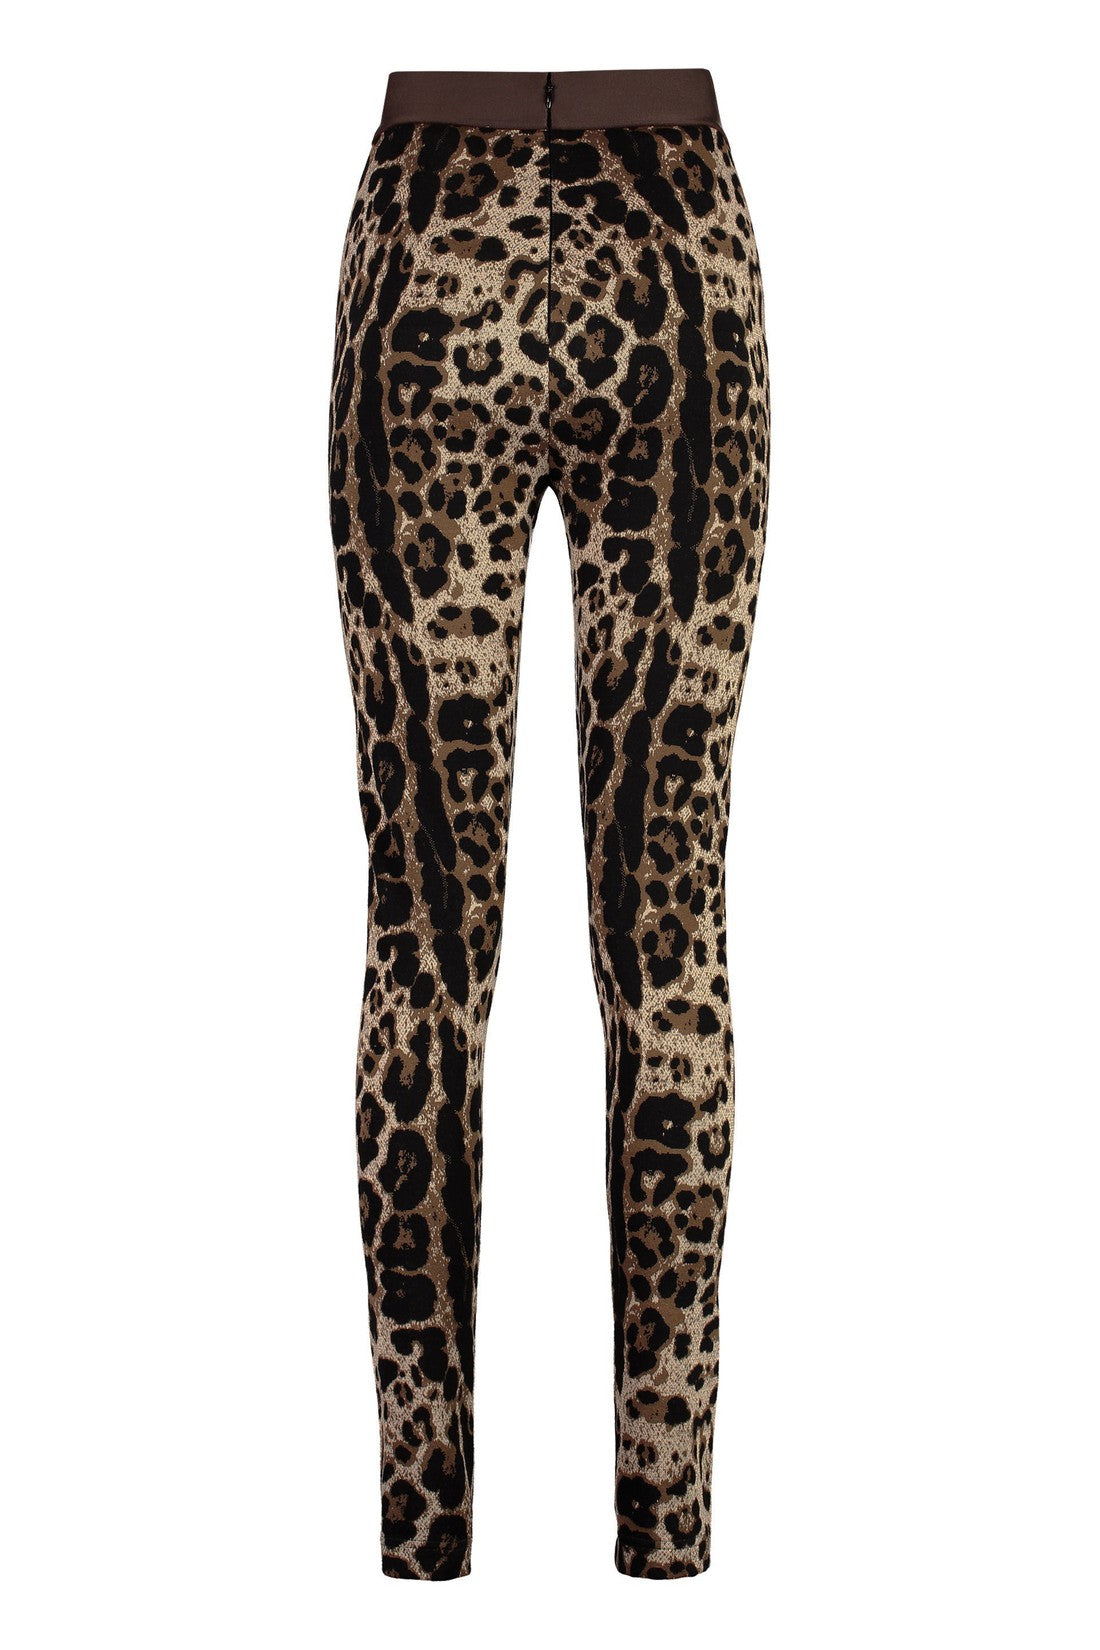 Dolce & Gabbana-OUTLET-SALE-Knit leggings-ARCHIVIST